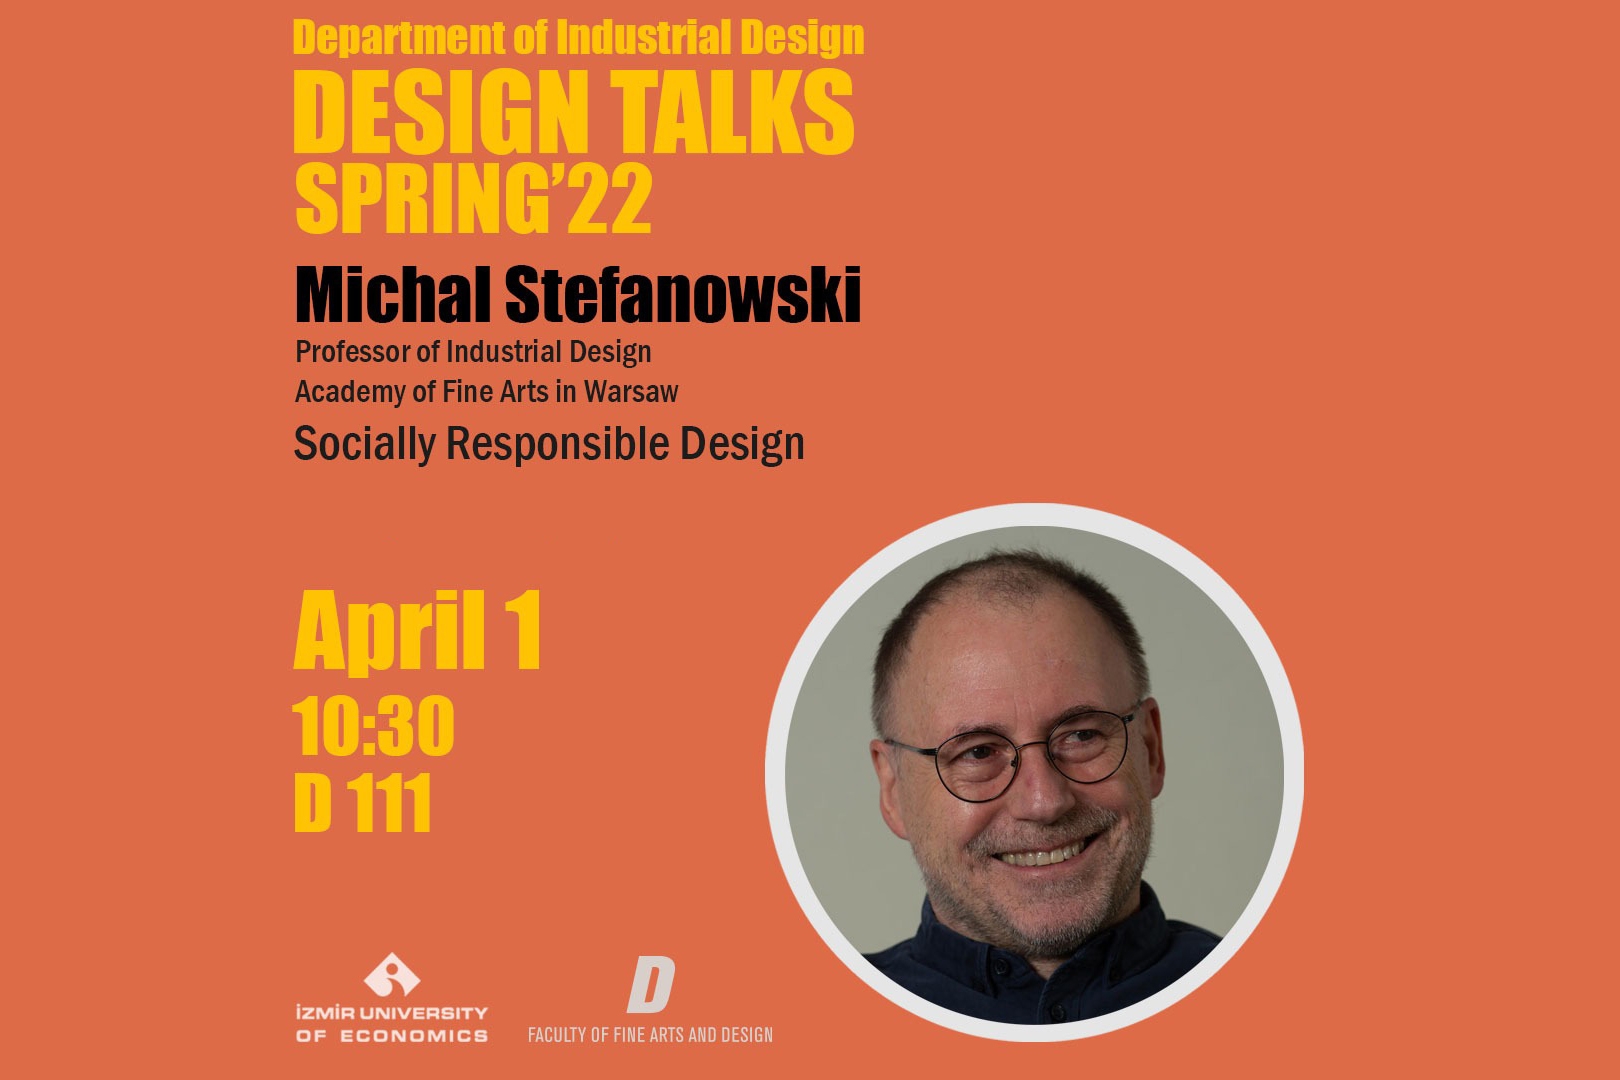 Design Talks Spring '22 starts with Michał Stefanowski